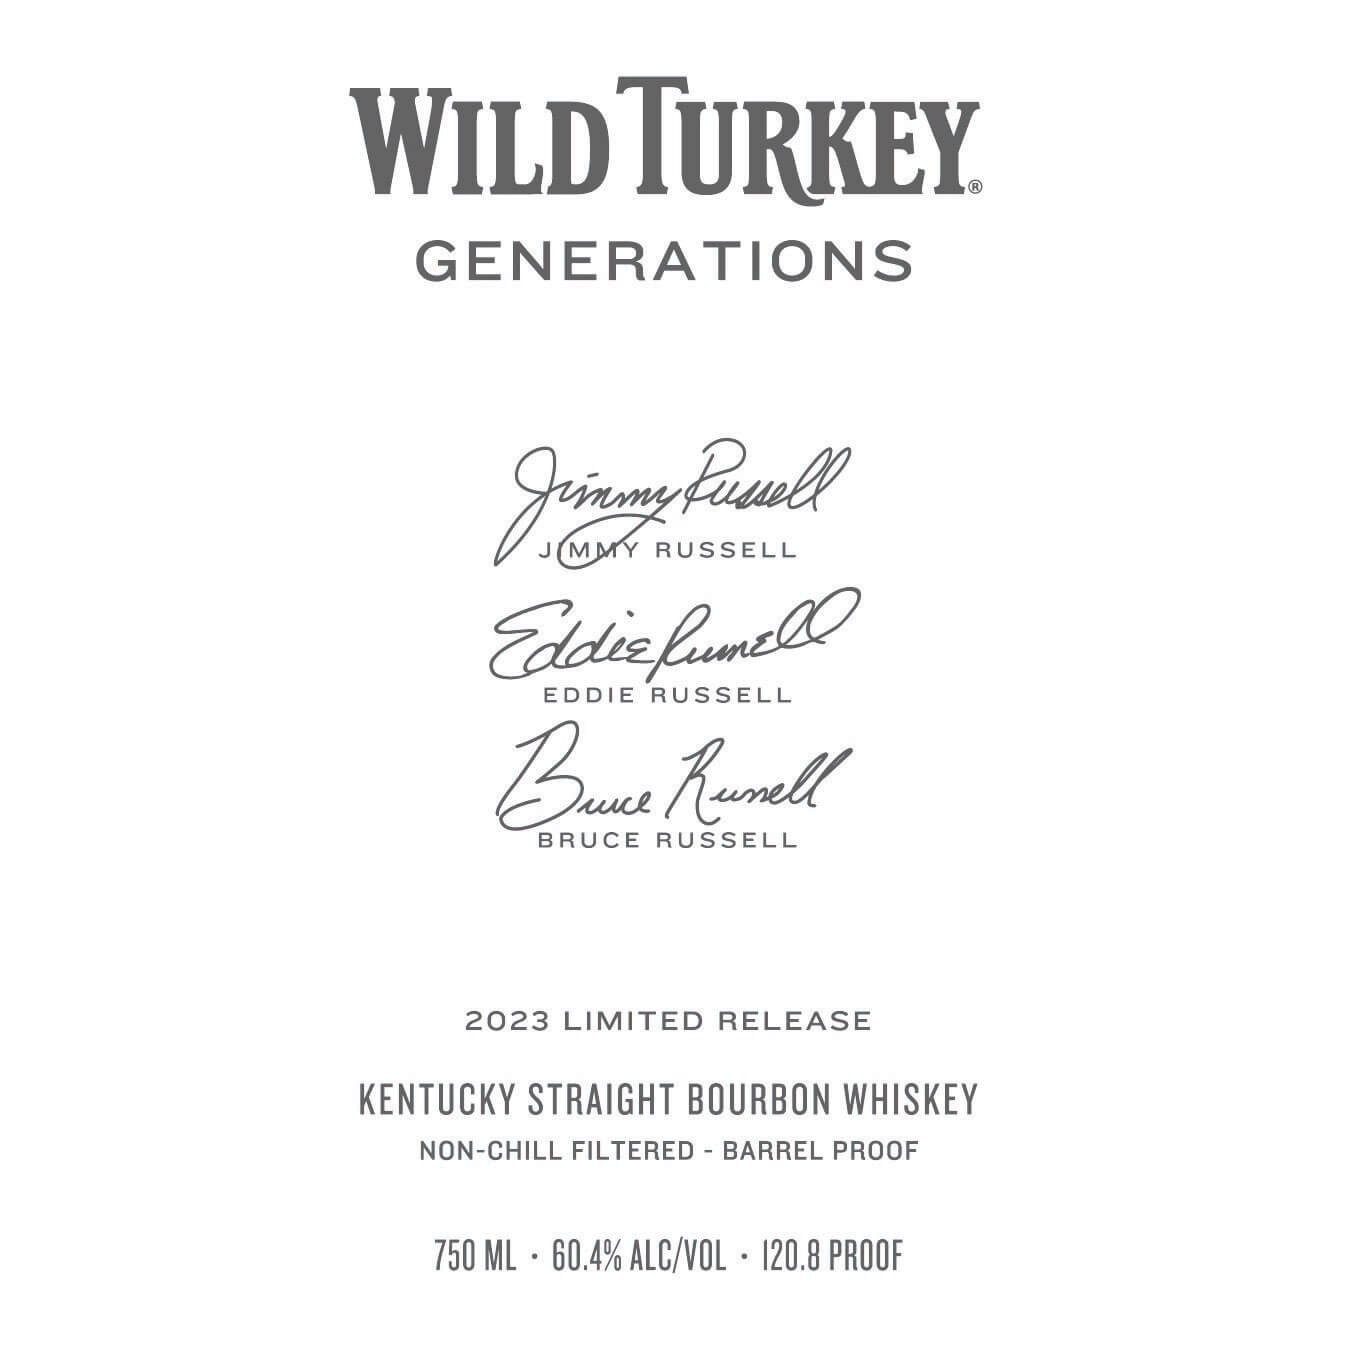 Wild Turkey Generations release details